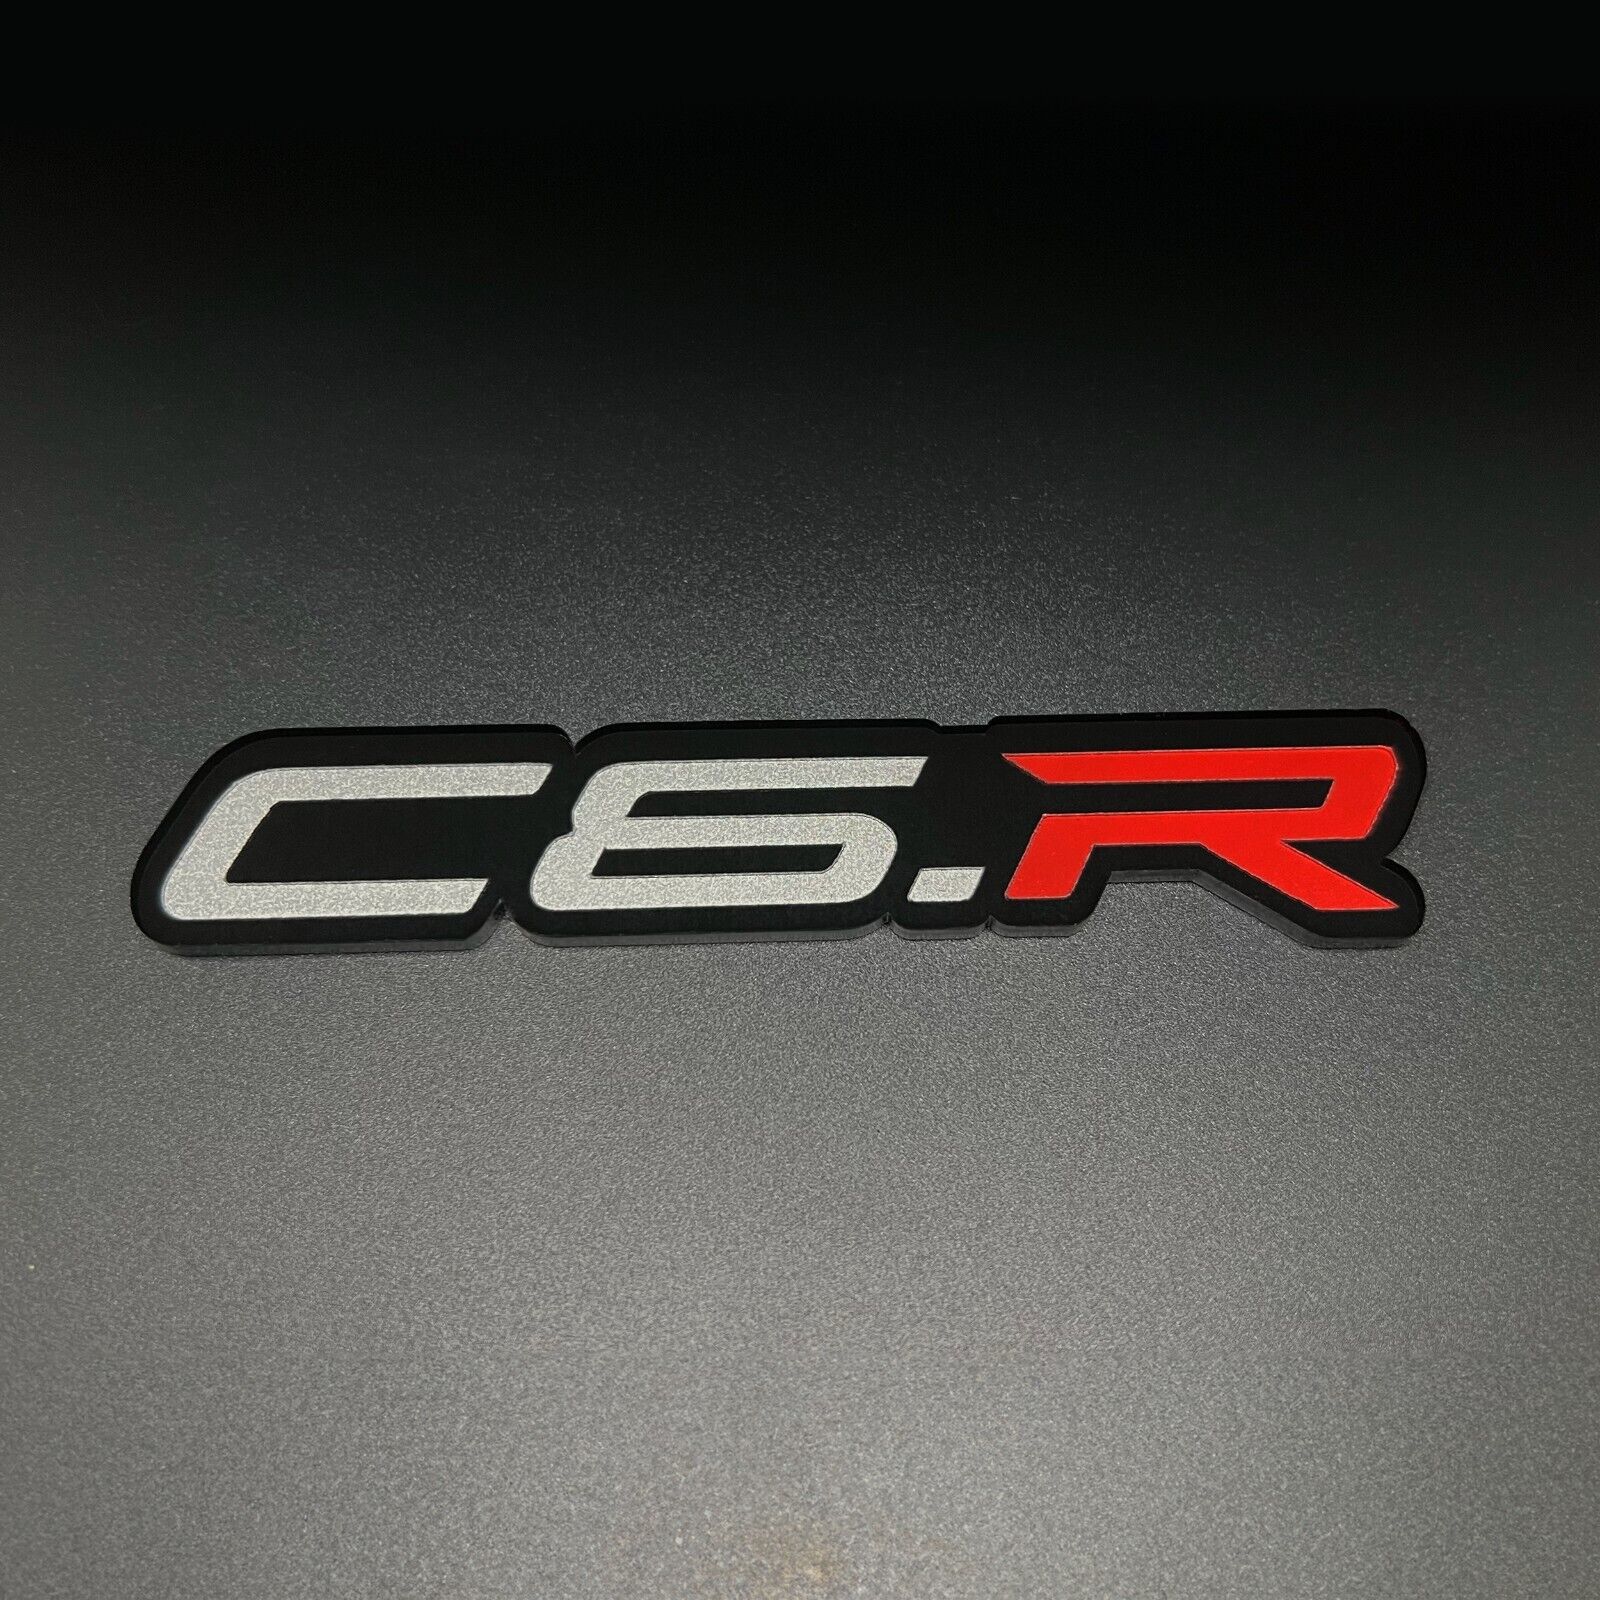 ONE (1) C6.R Emblem Badge fits Chevy Corvette Racing Vette c6 c-6 Chevrolet Jake